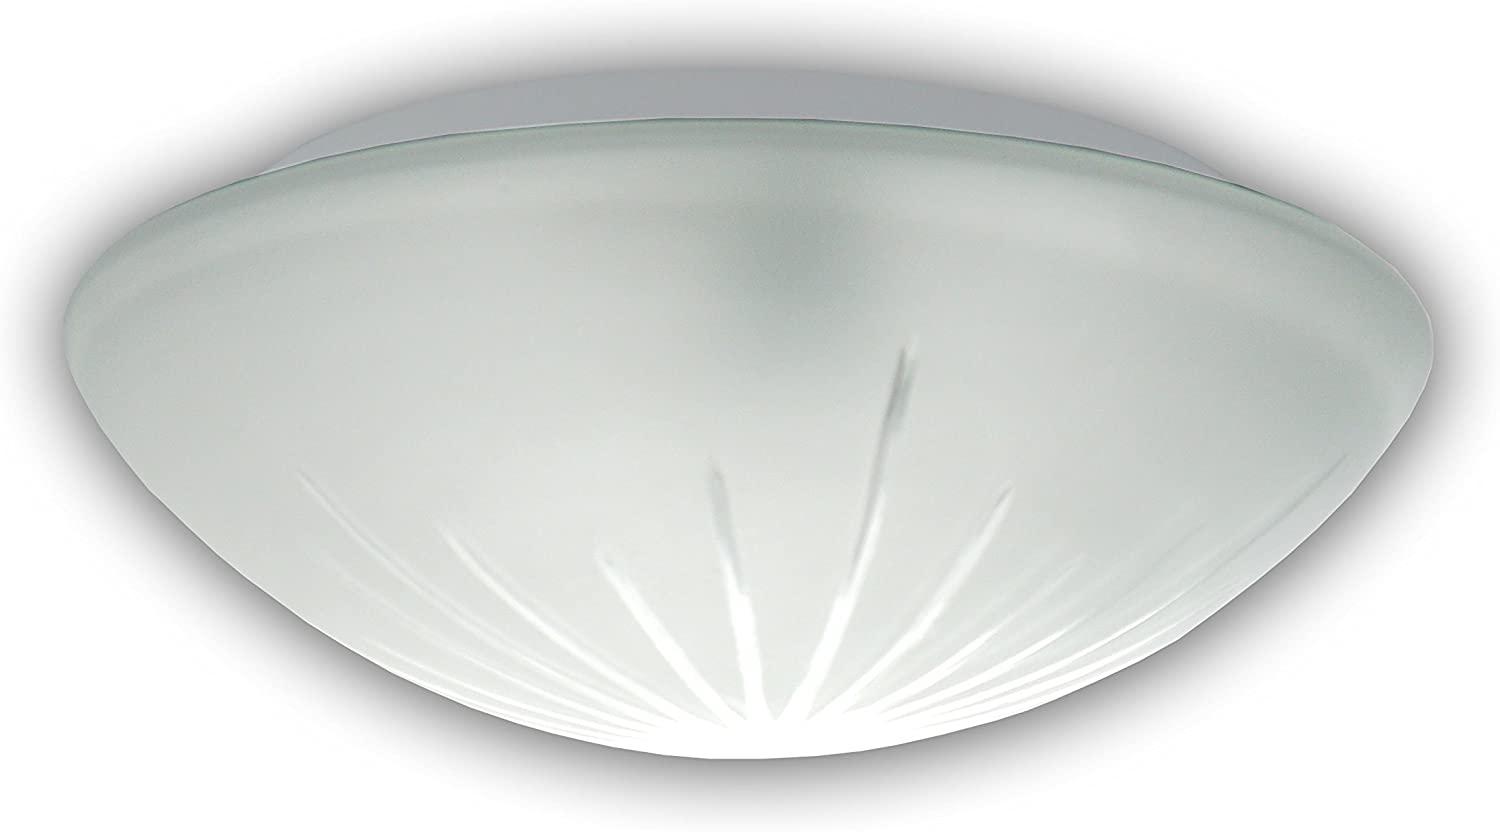 LED-Deckenleuchte / Deckenschale rund, Schliffglas satiniert, Ø 30cm Bild 1